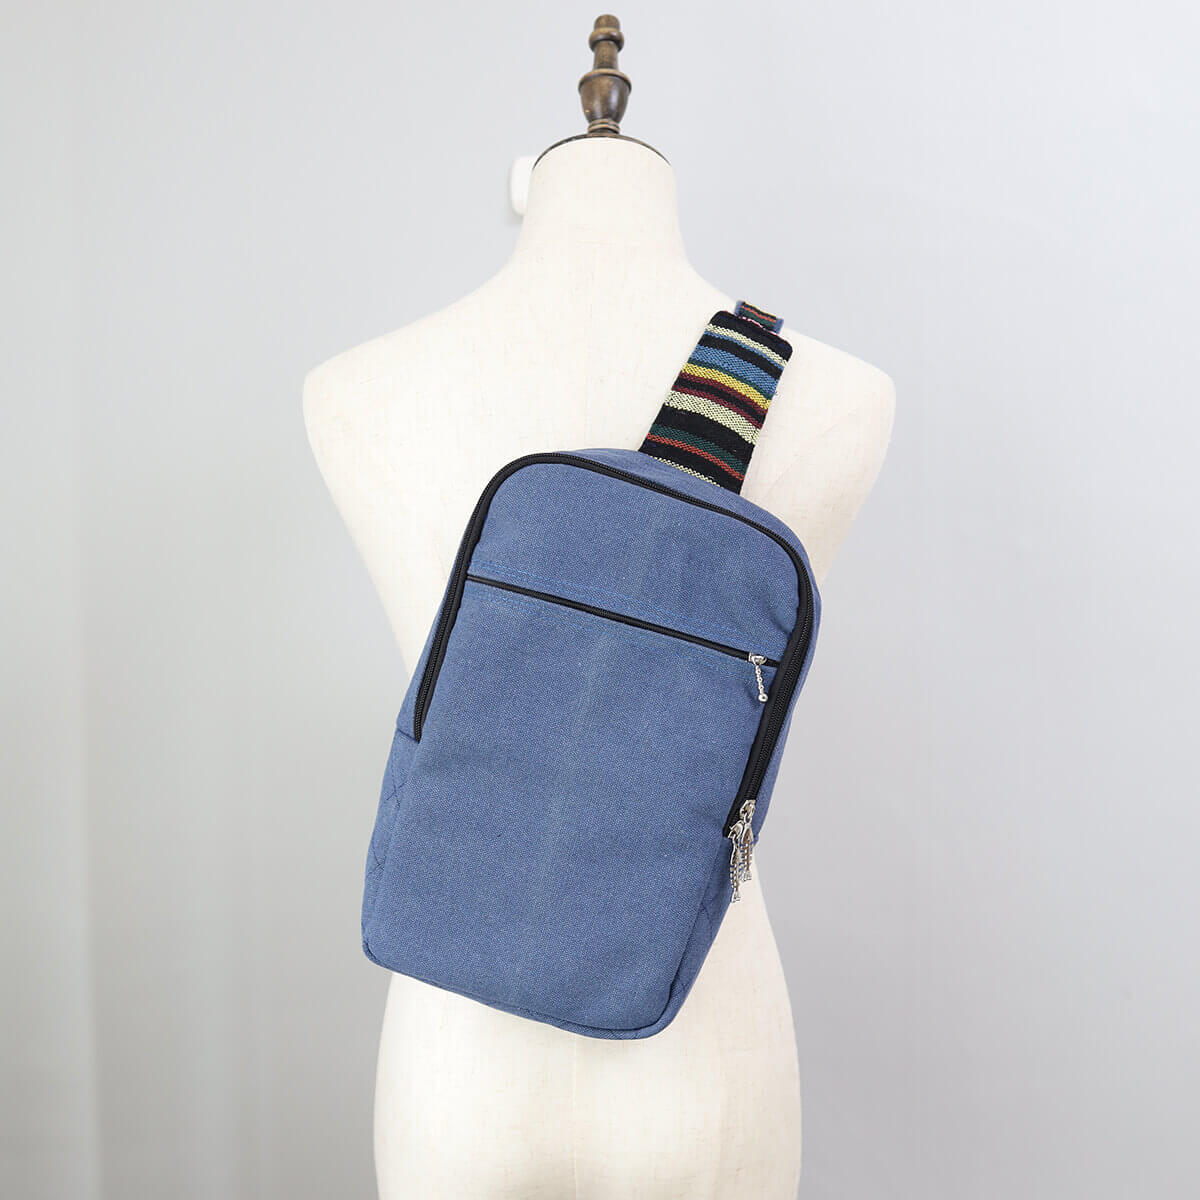 Leather Unisex Sling Bag Pdf Pattern - Sling Bag Making - Shoulder Bag - Crossbody  Bag Tutorial - YouTube